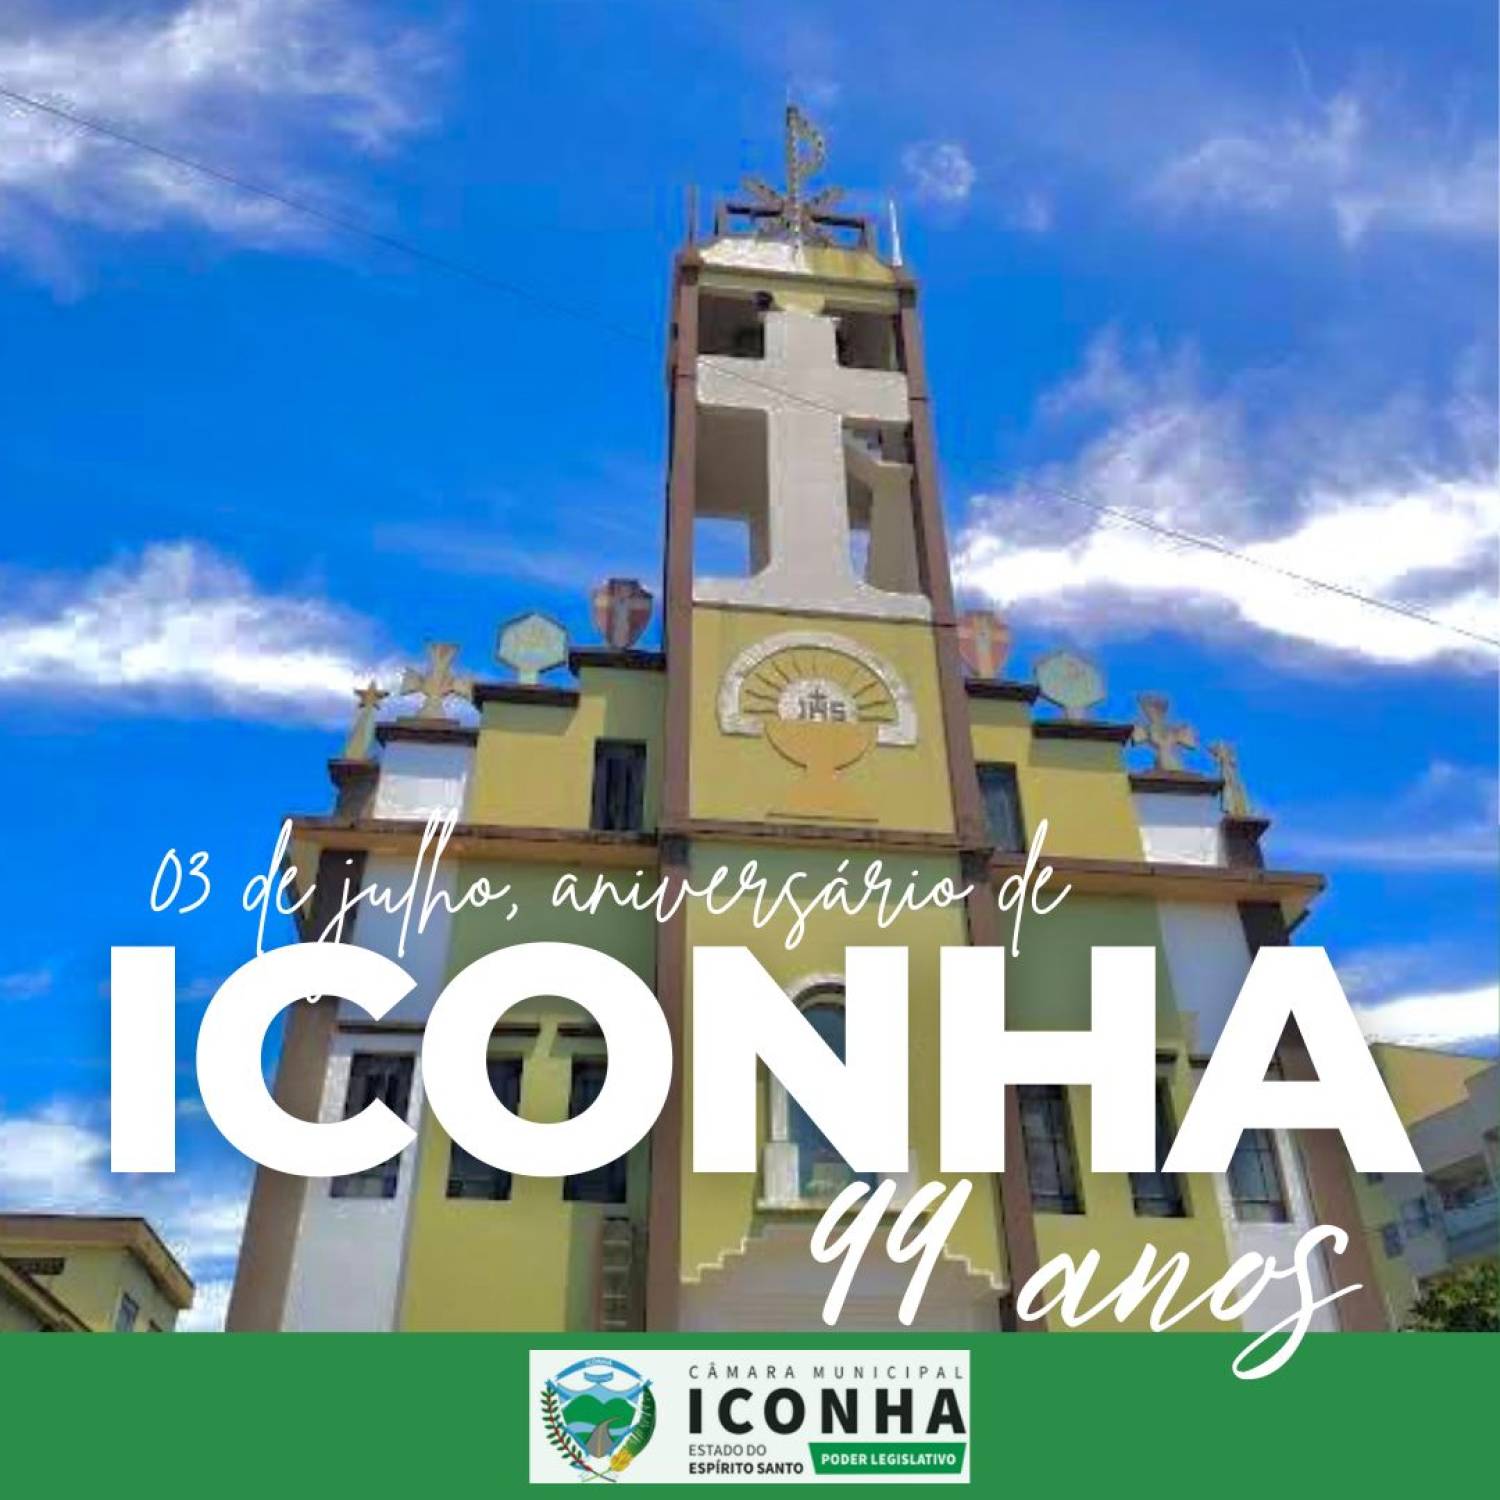 Parabéns Iconha!